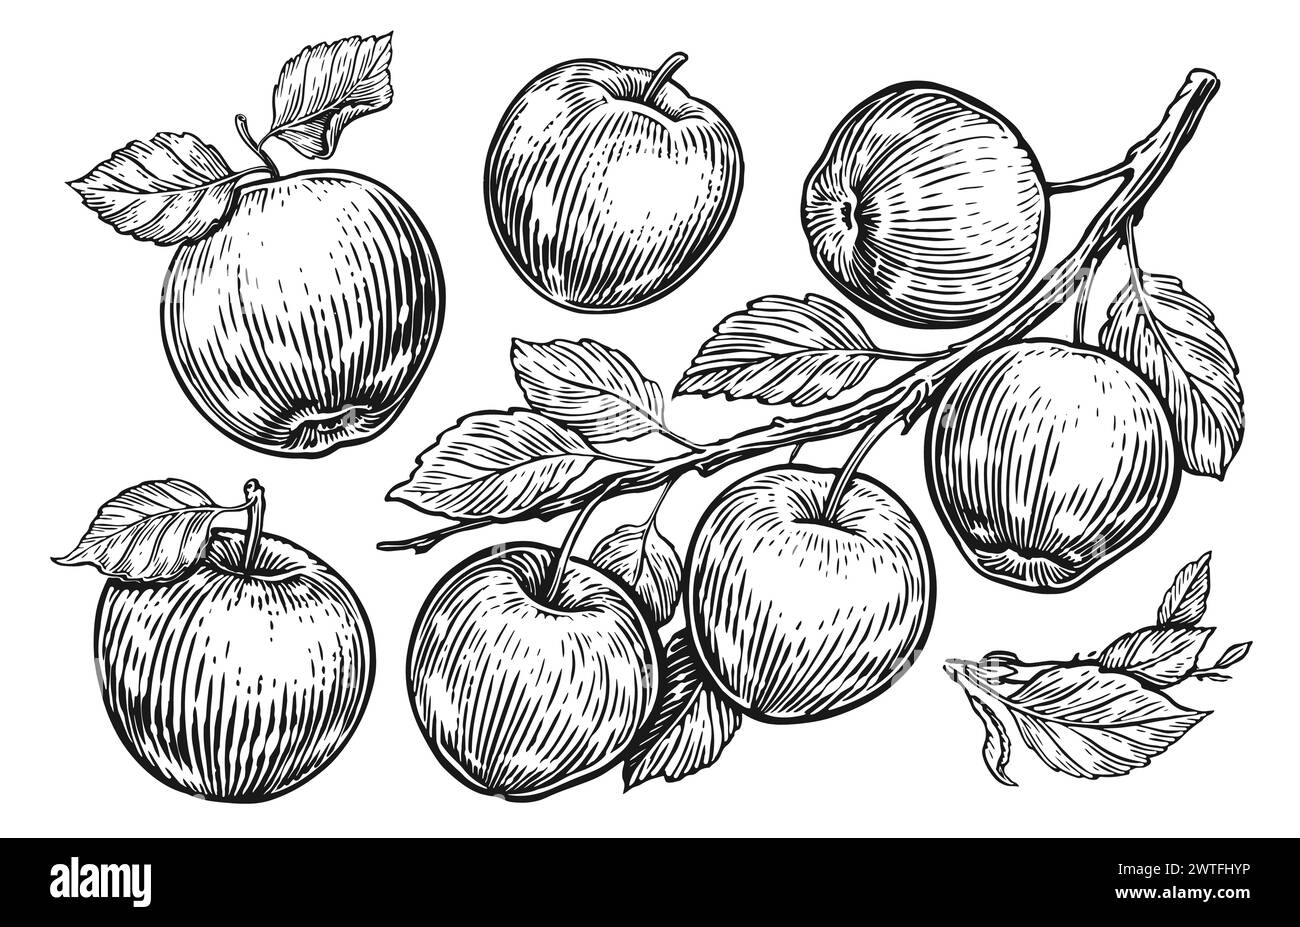 Apfelfrucht, Zweig mit Blättern. Satz von Skizzenäpfeln. Hand gezeichnet Gravur Stil Vektor Illustration Stock Vektor